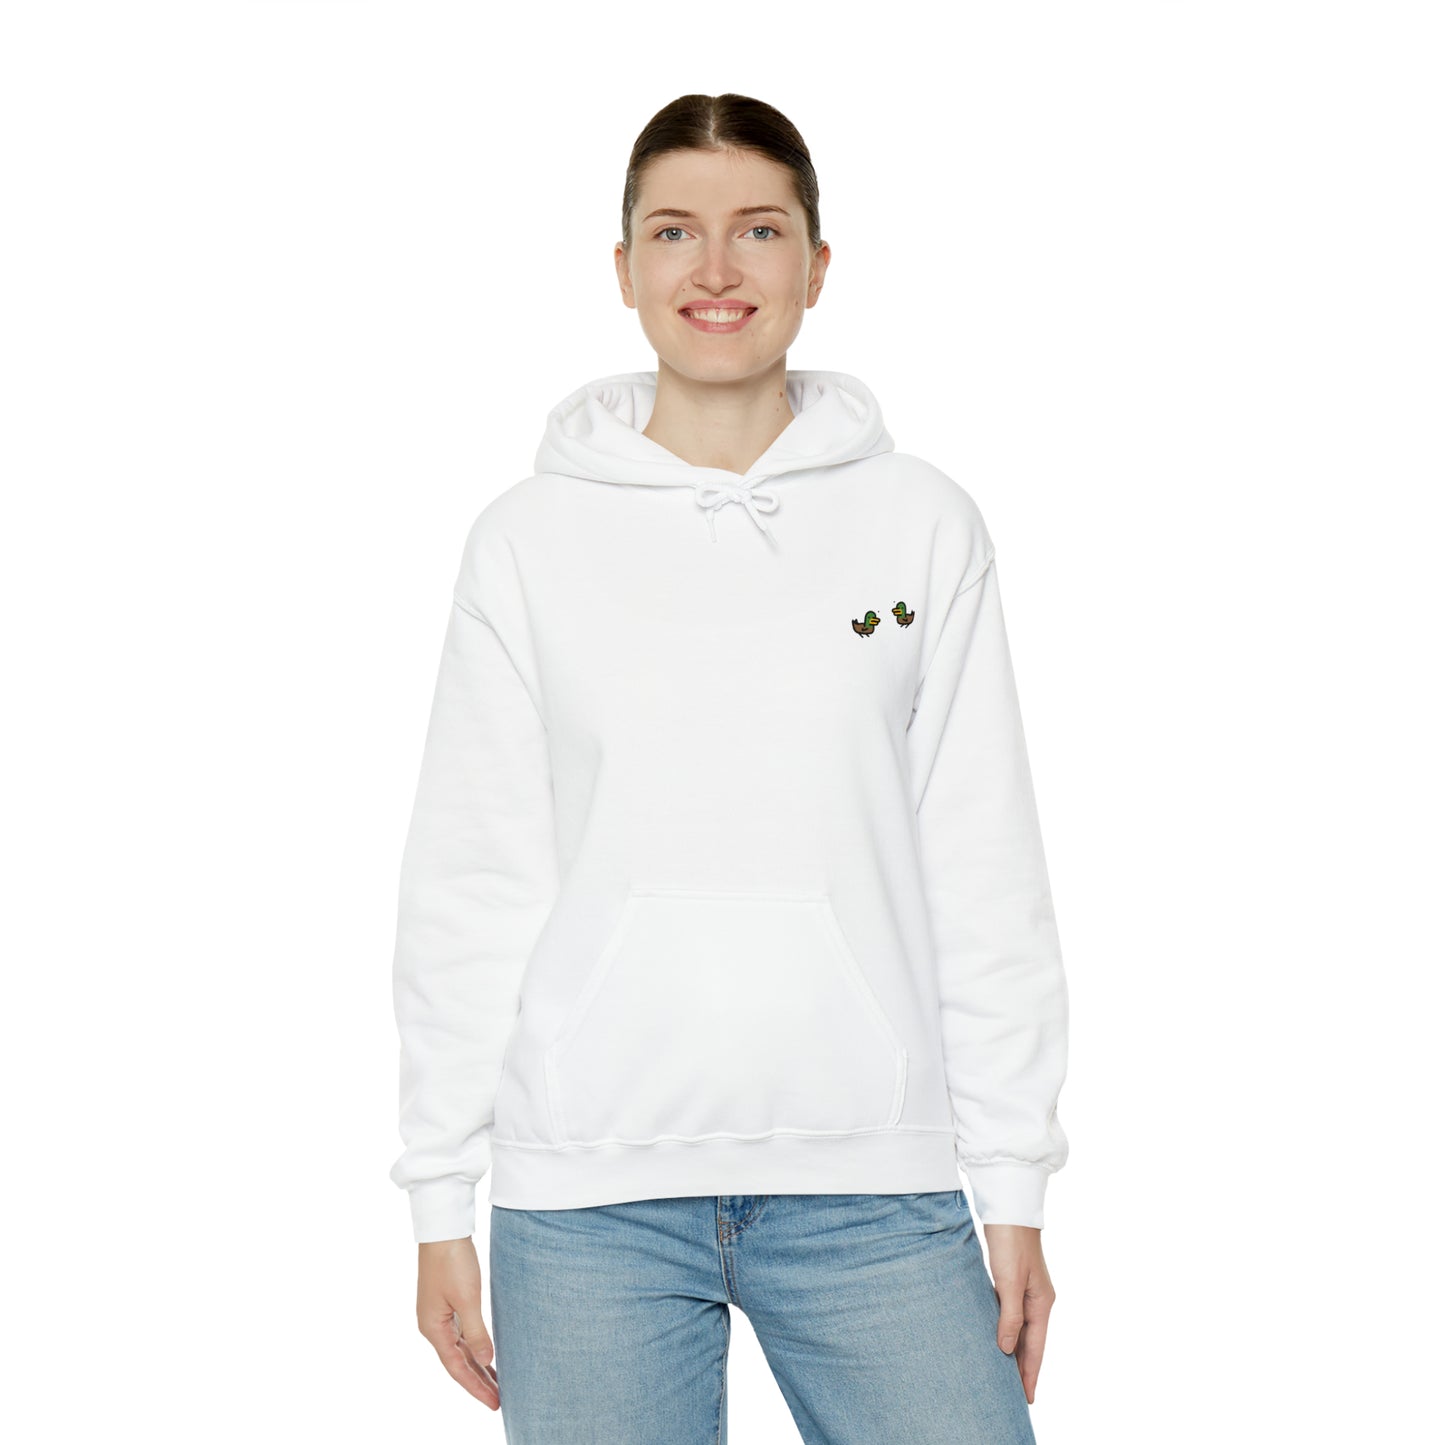 Twin Ducks - Adult Unisex Heavy Blend™ Hooded Sweatshirt